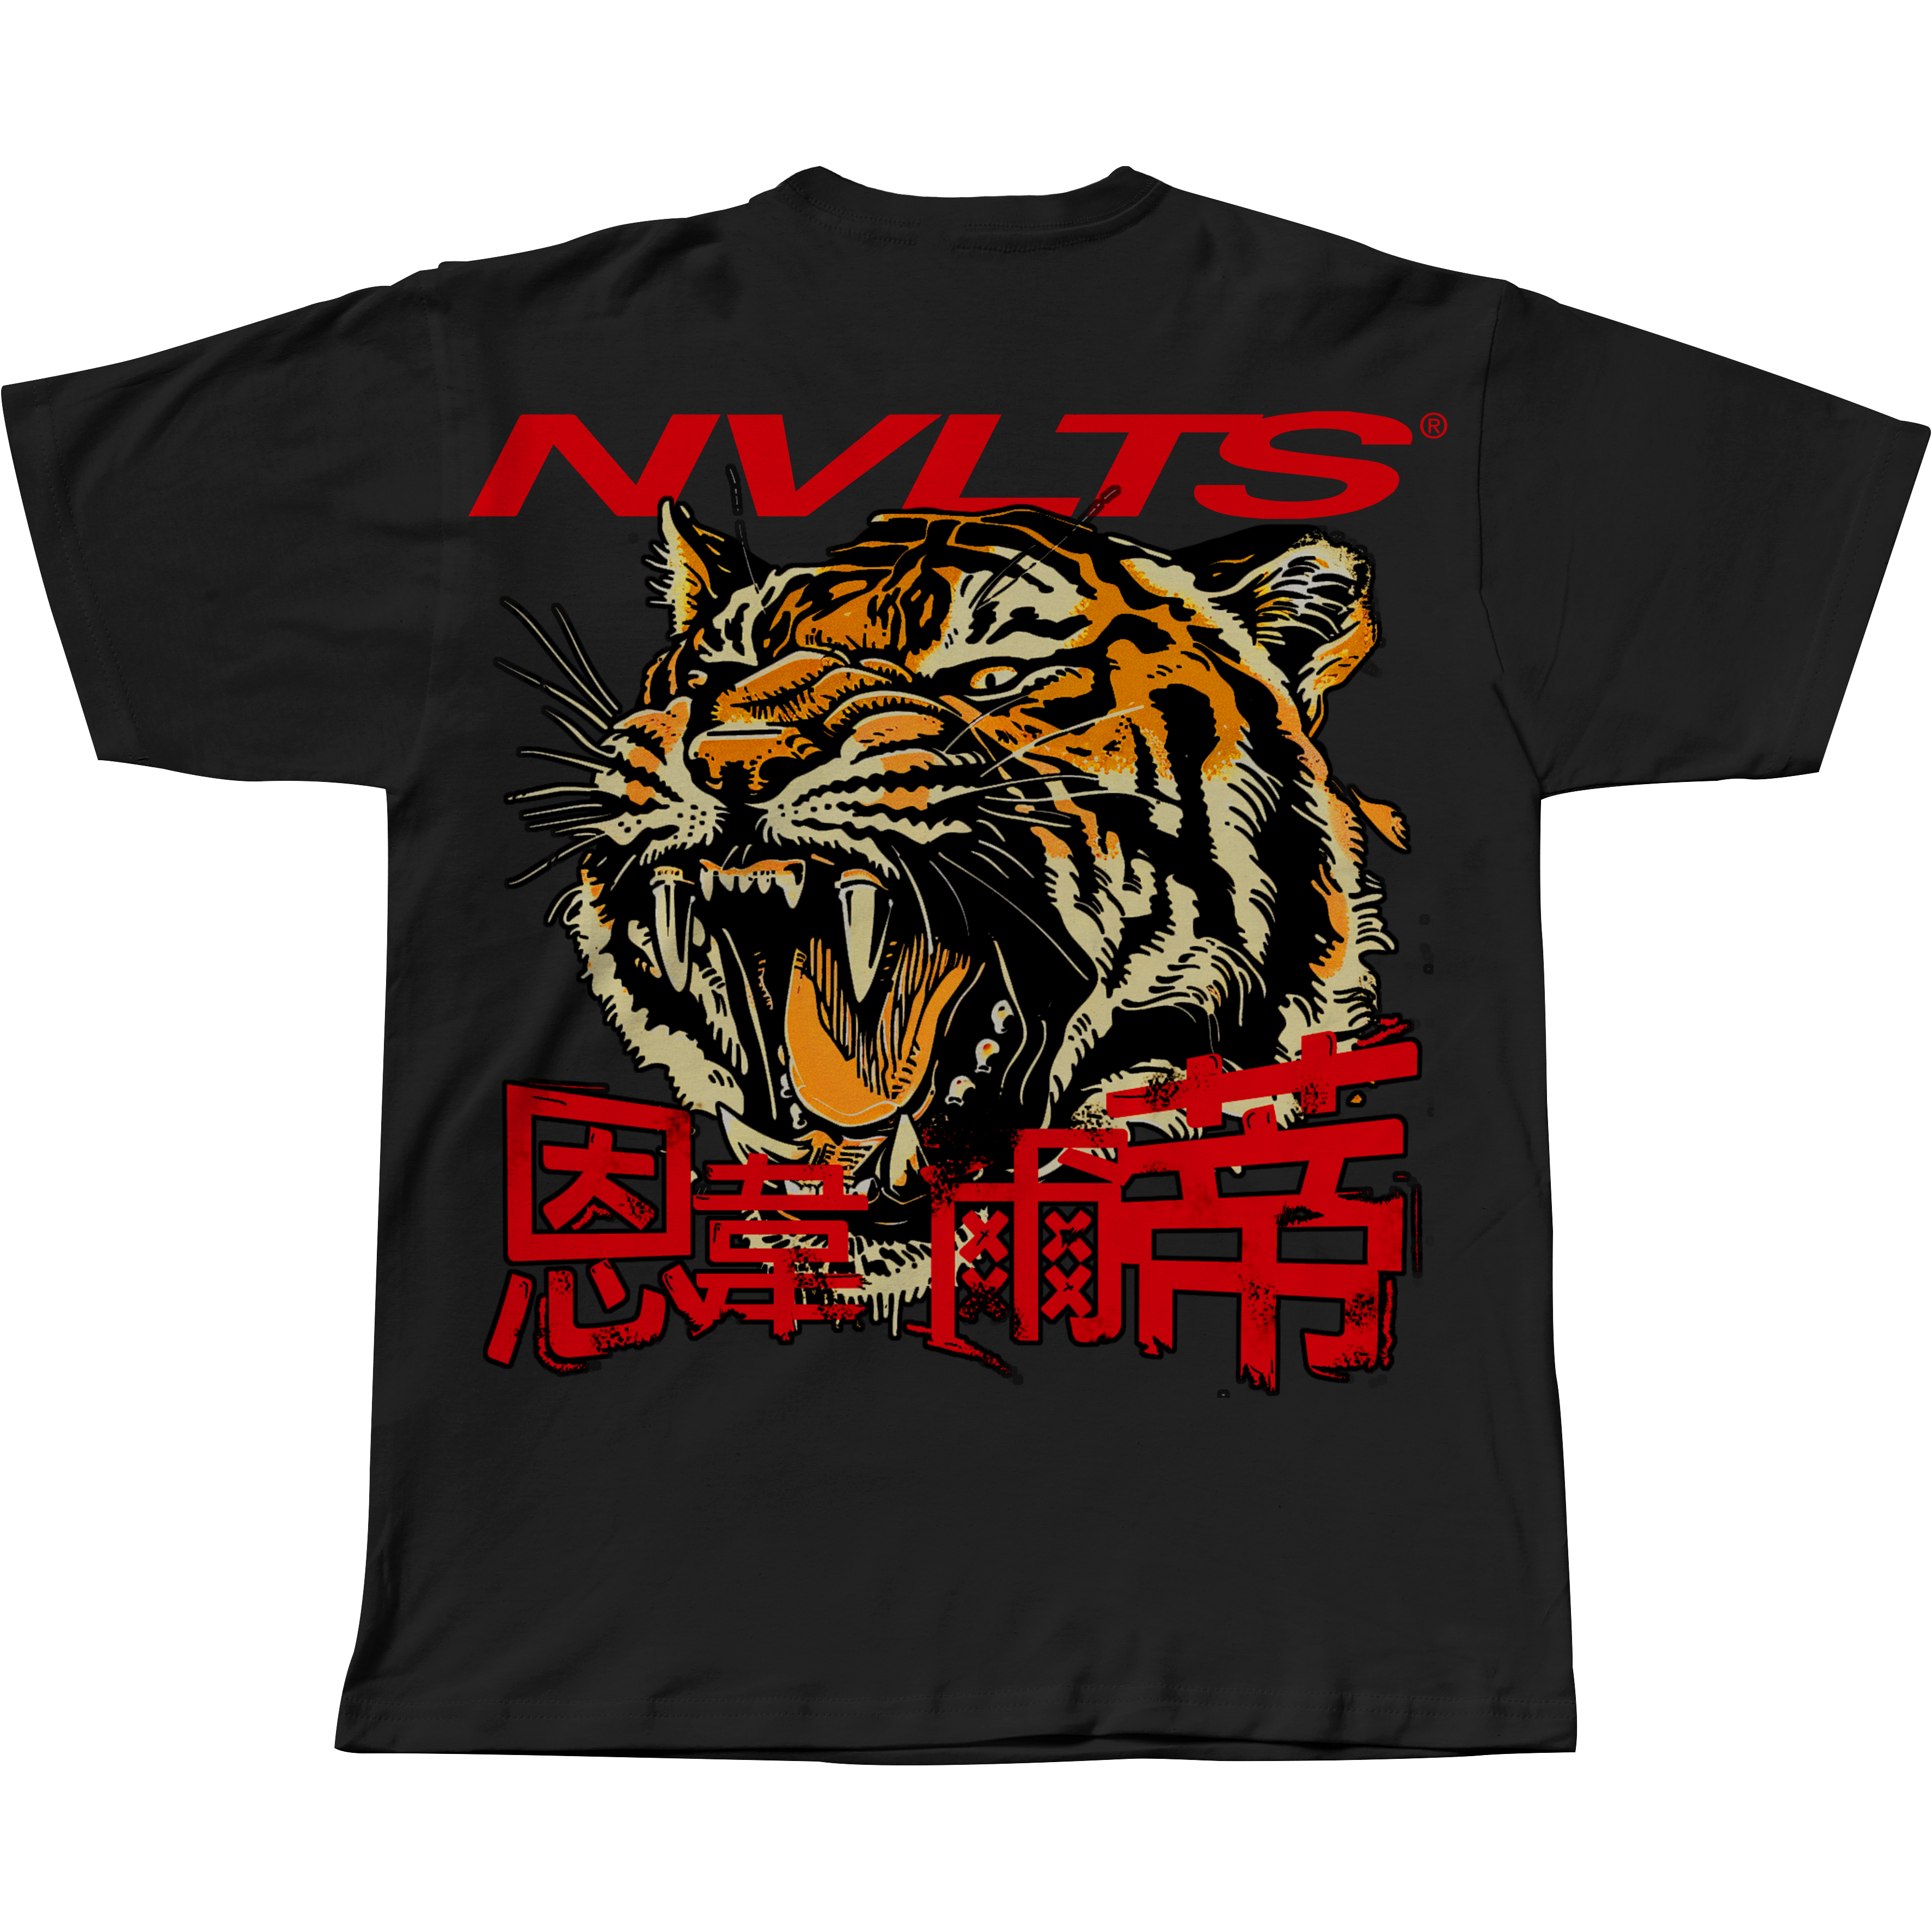 NVLTS "Tigerblood" Black Drop Shoulder Oversized Tee - Orange, Red, & White on Black